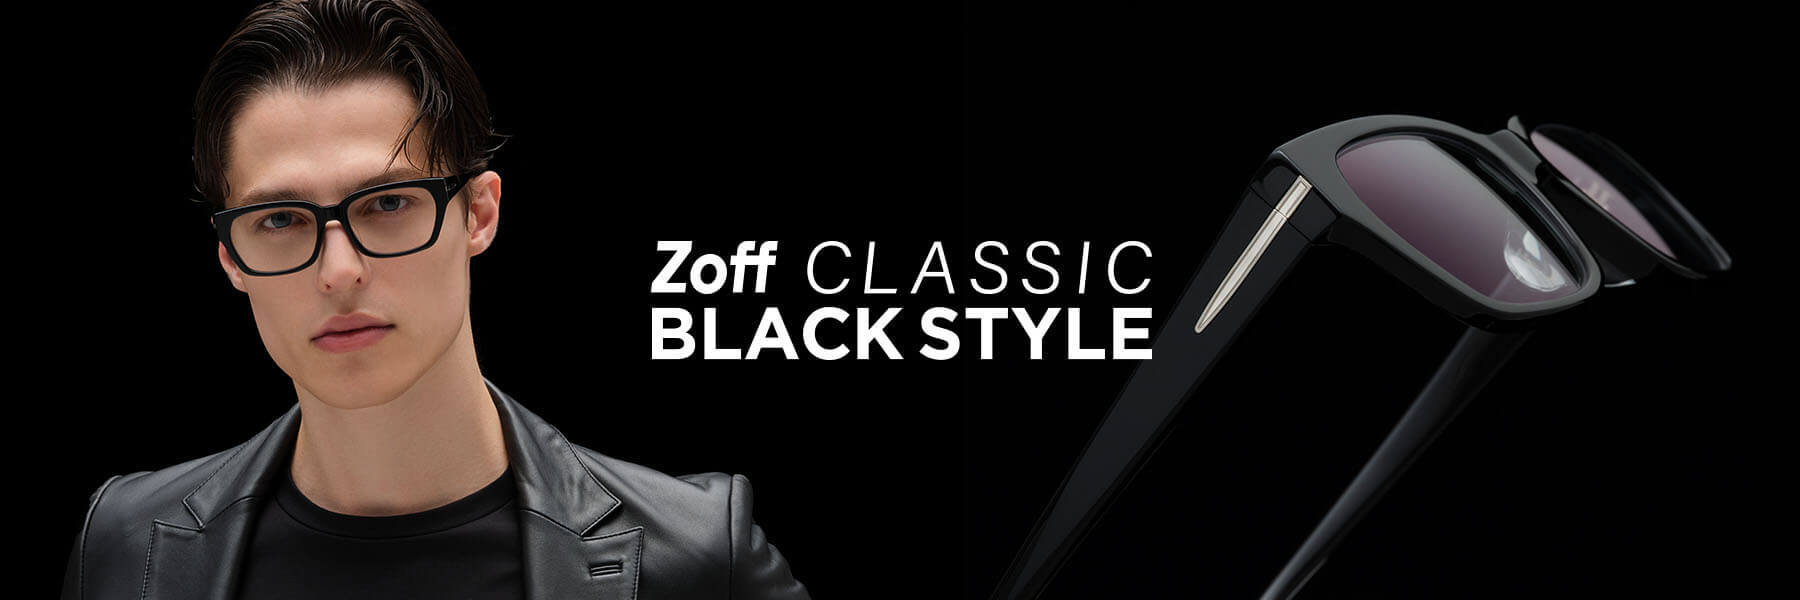 Zoff CLASSIC BLACK STYLE 目元に色気を添える、大人の男性のためのコレクション。